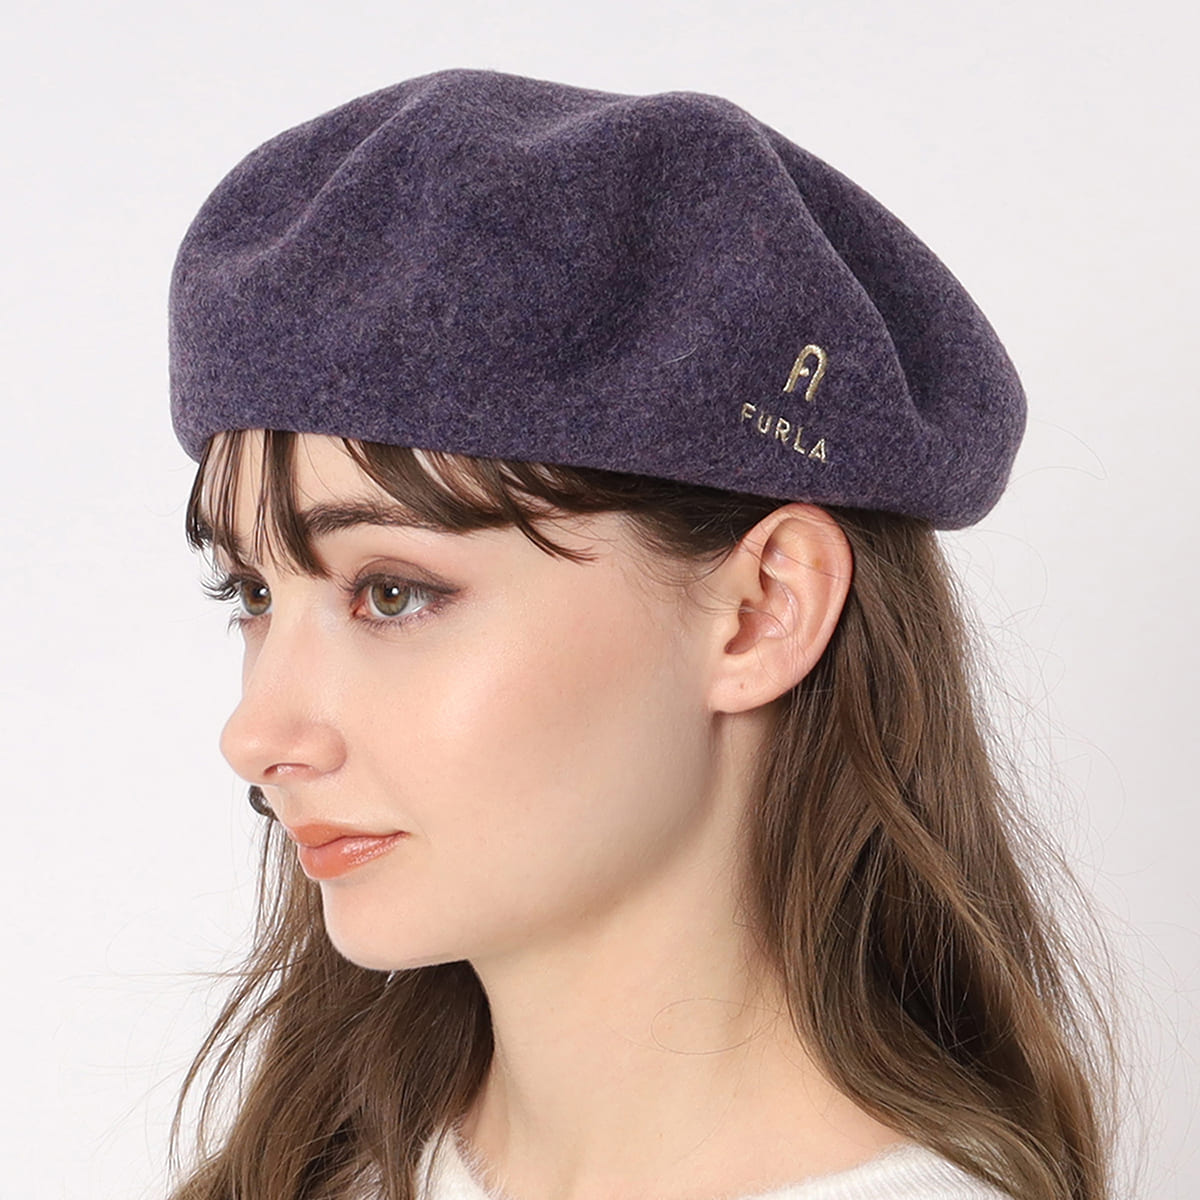 ロゴ入りバスクベレー帽 | フルラ(FURLA) | 2613569920 | ファッション